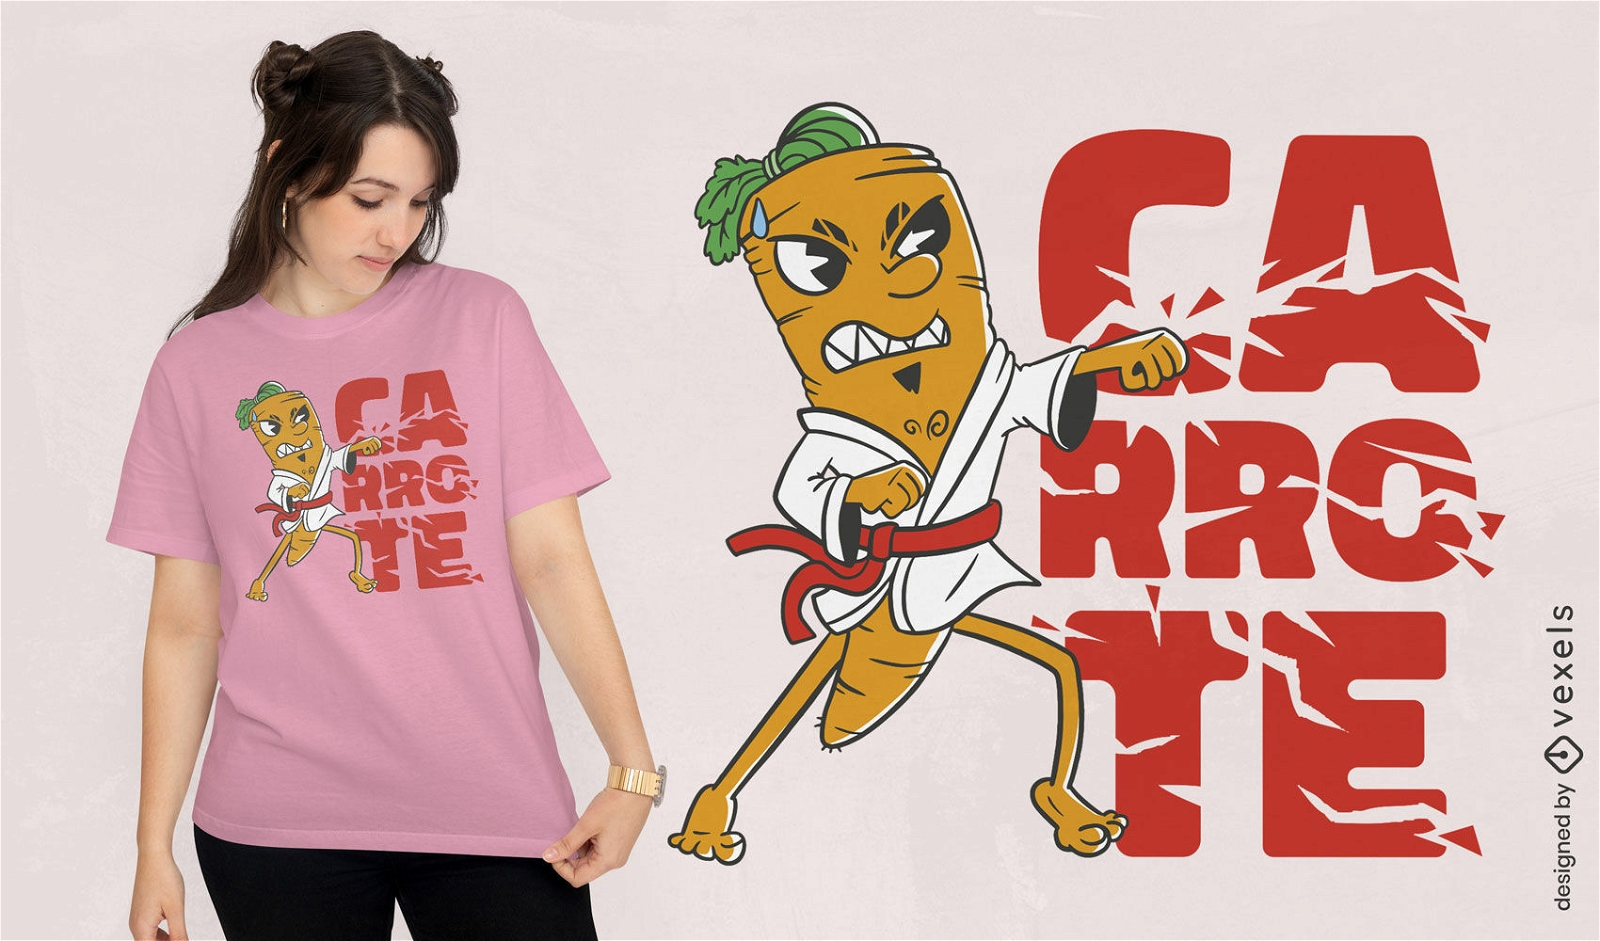 Karate carrot character t-shirt design